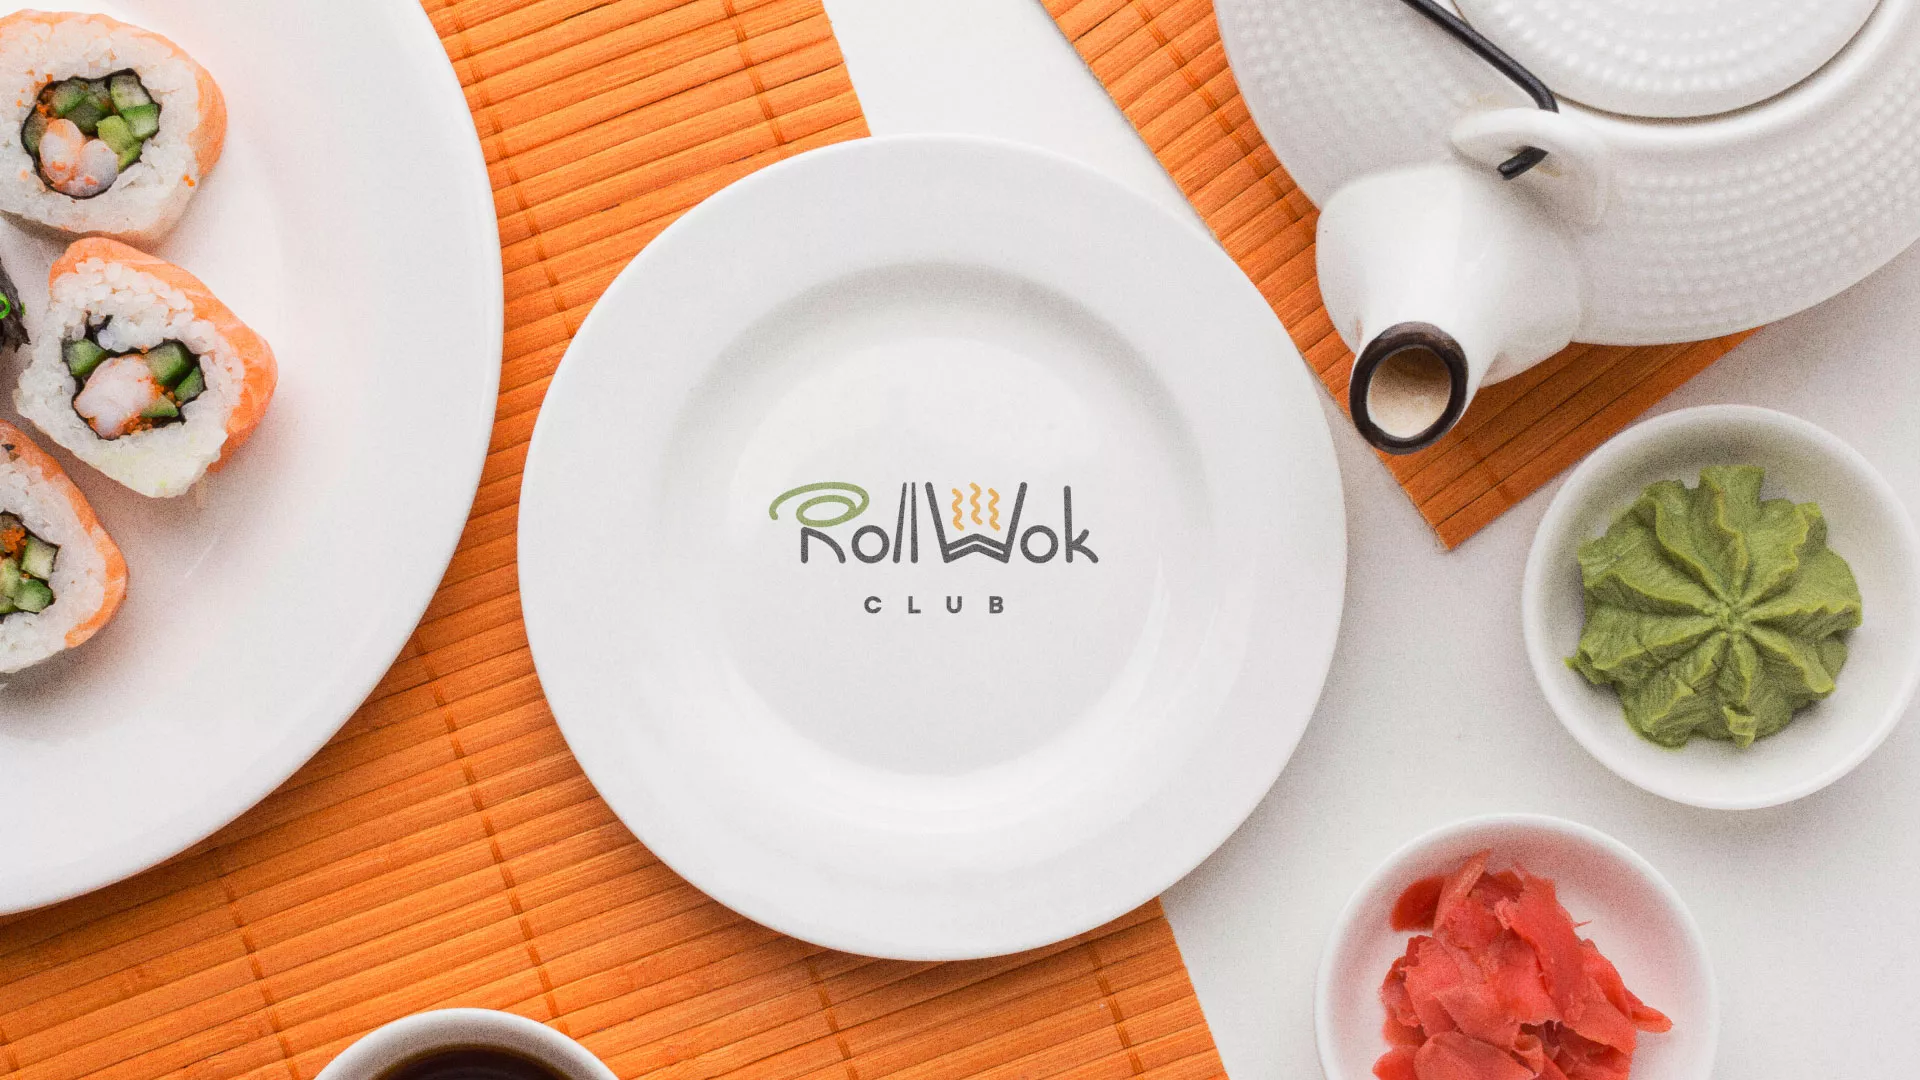 Разработка логотипа и фирменного стиля суши-бара «Roll Wok Club» в Елабуге